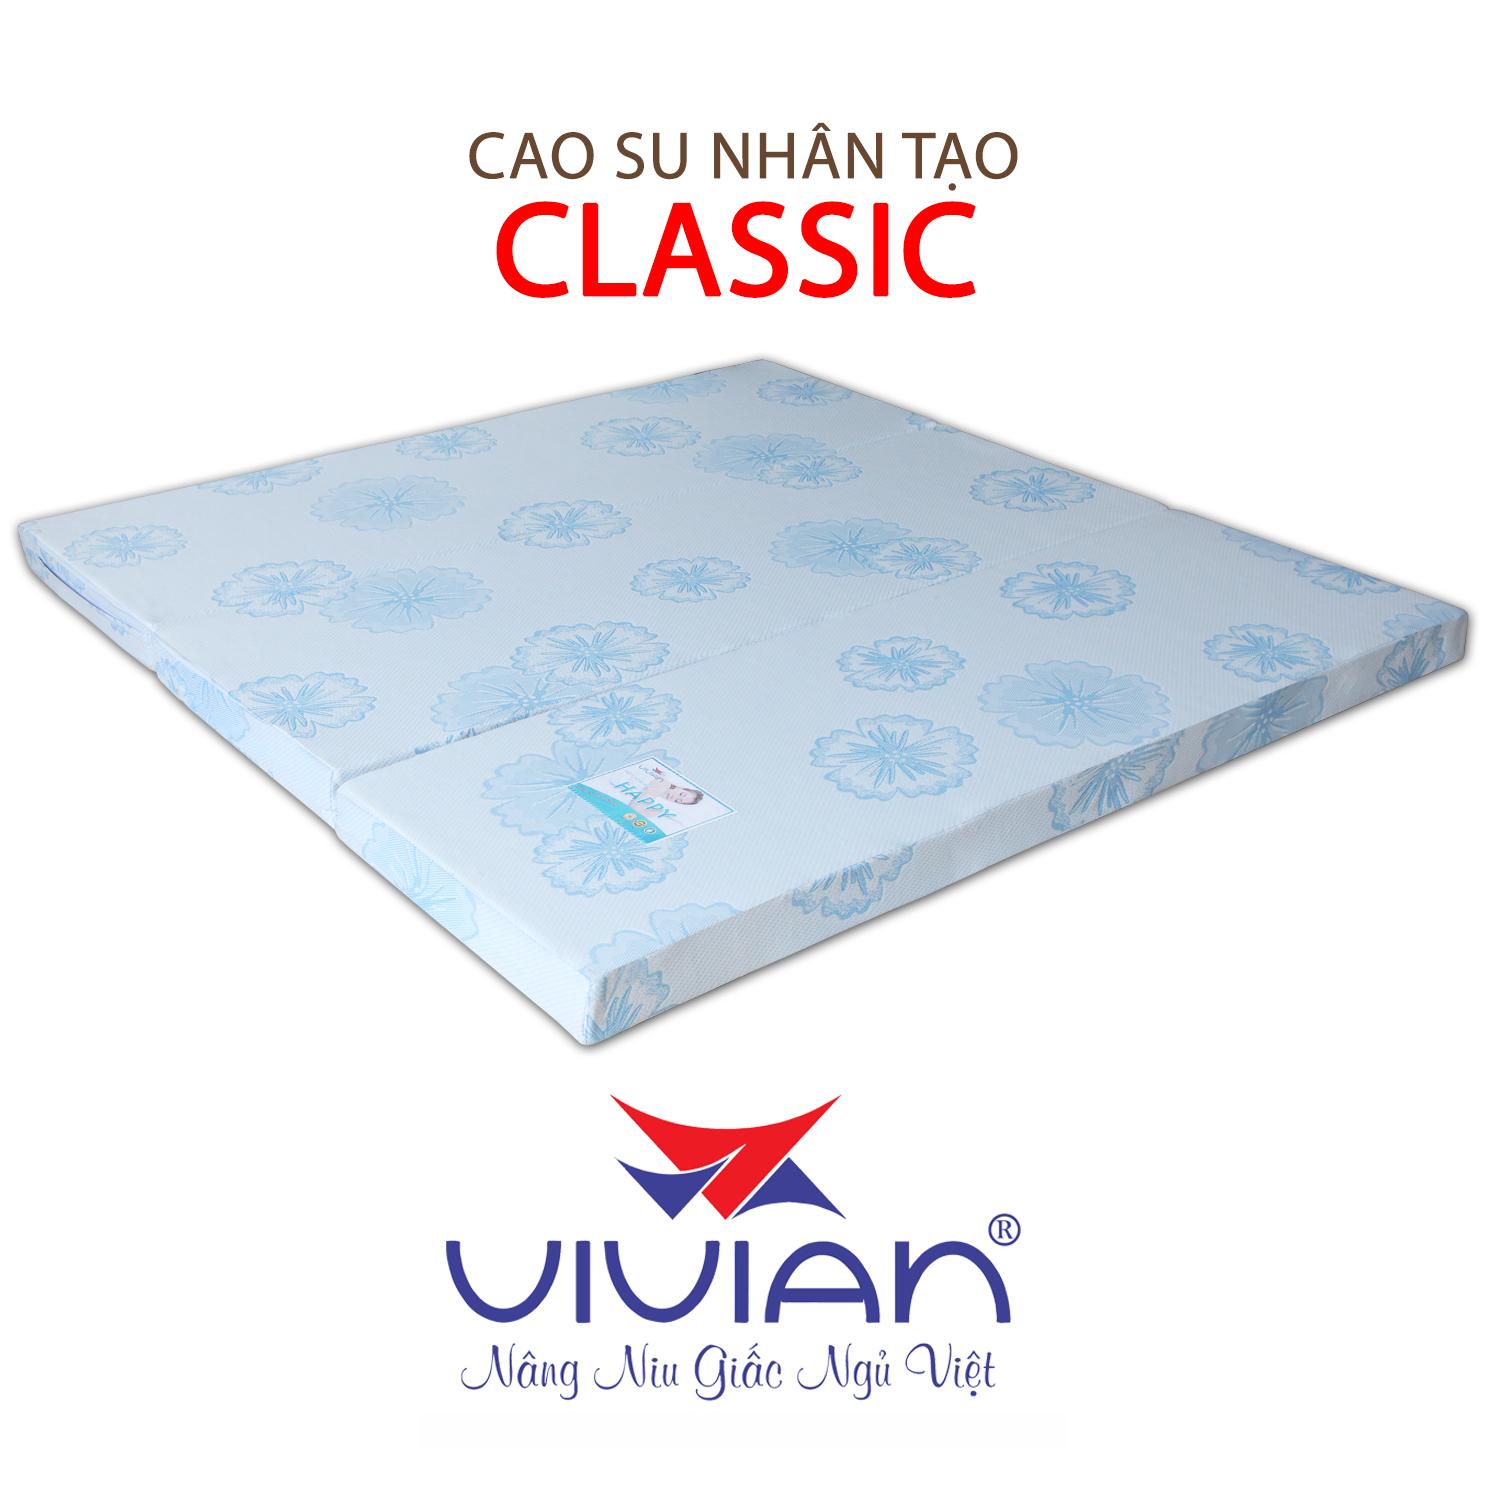 NỆM CAO SU NHÂN TẠO CLASSIC GẤP 3 VIVIAN 160X200X20